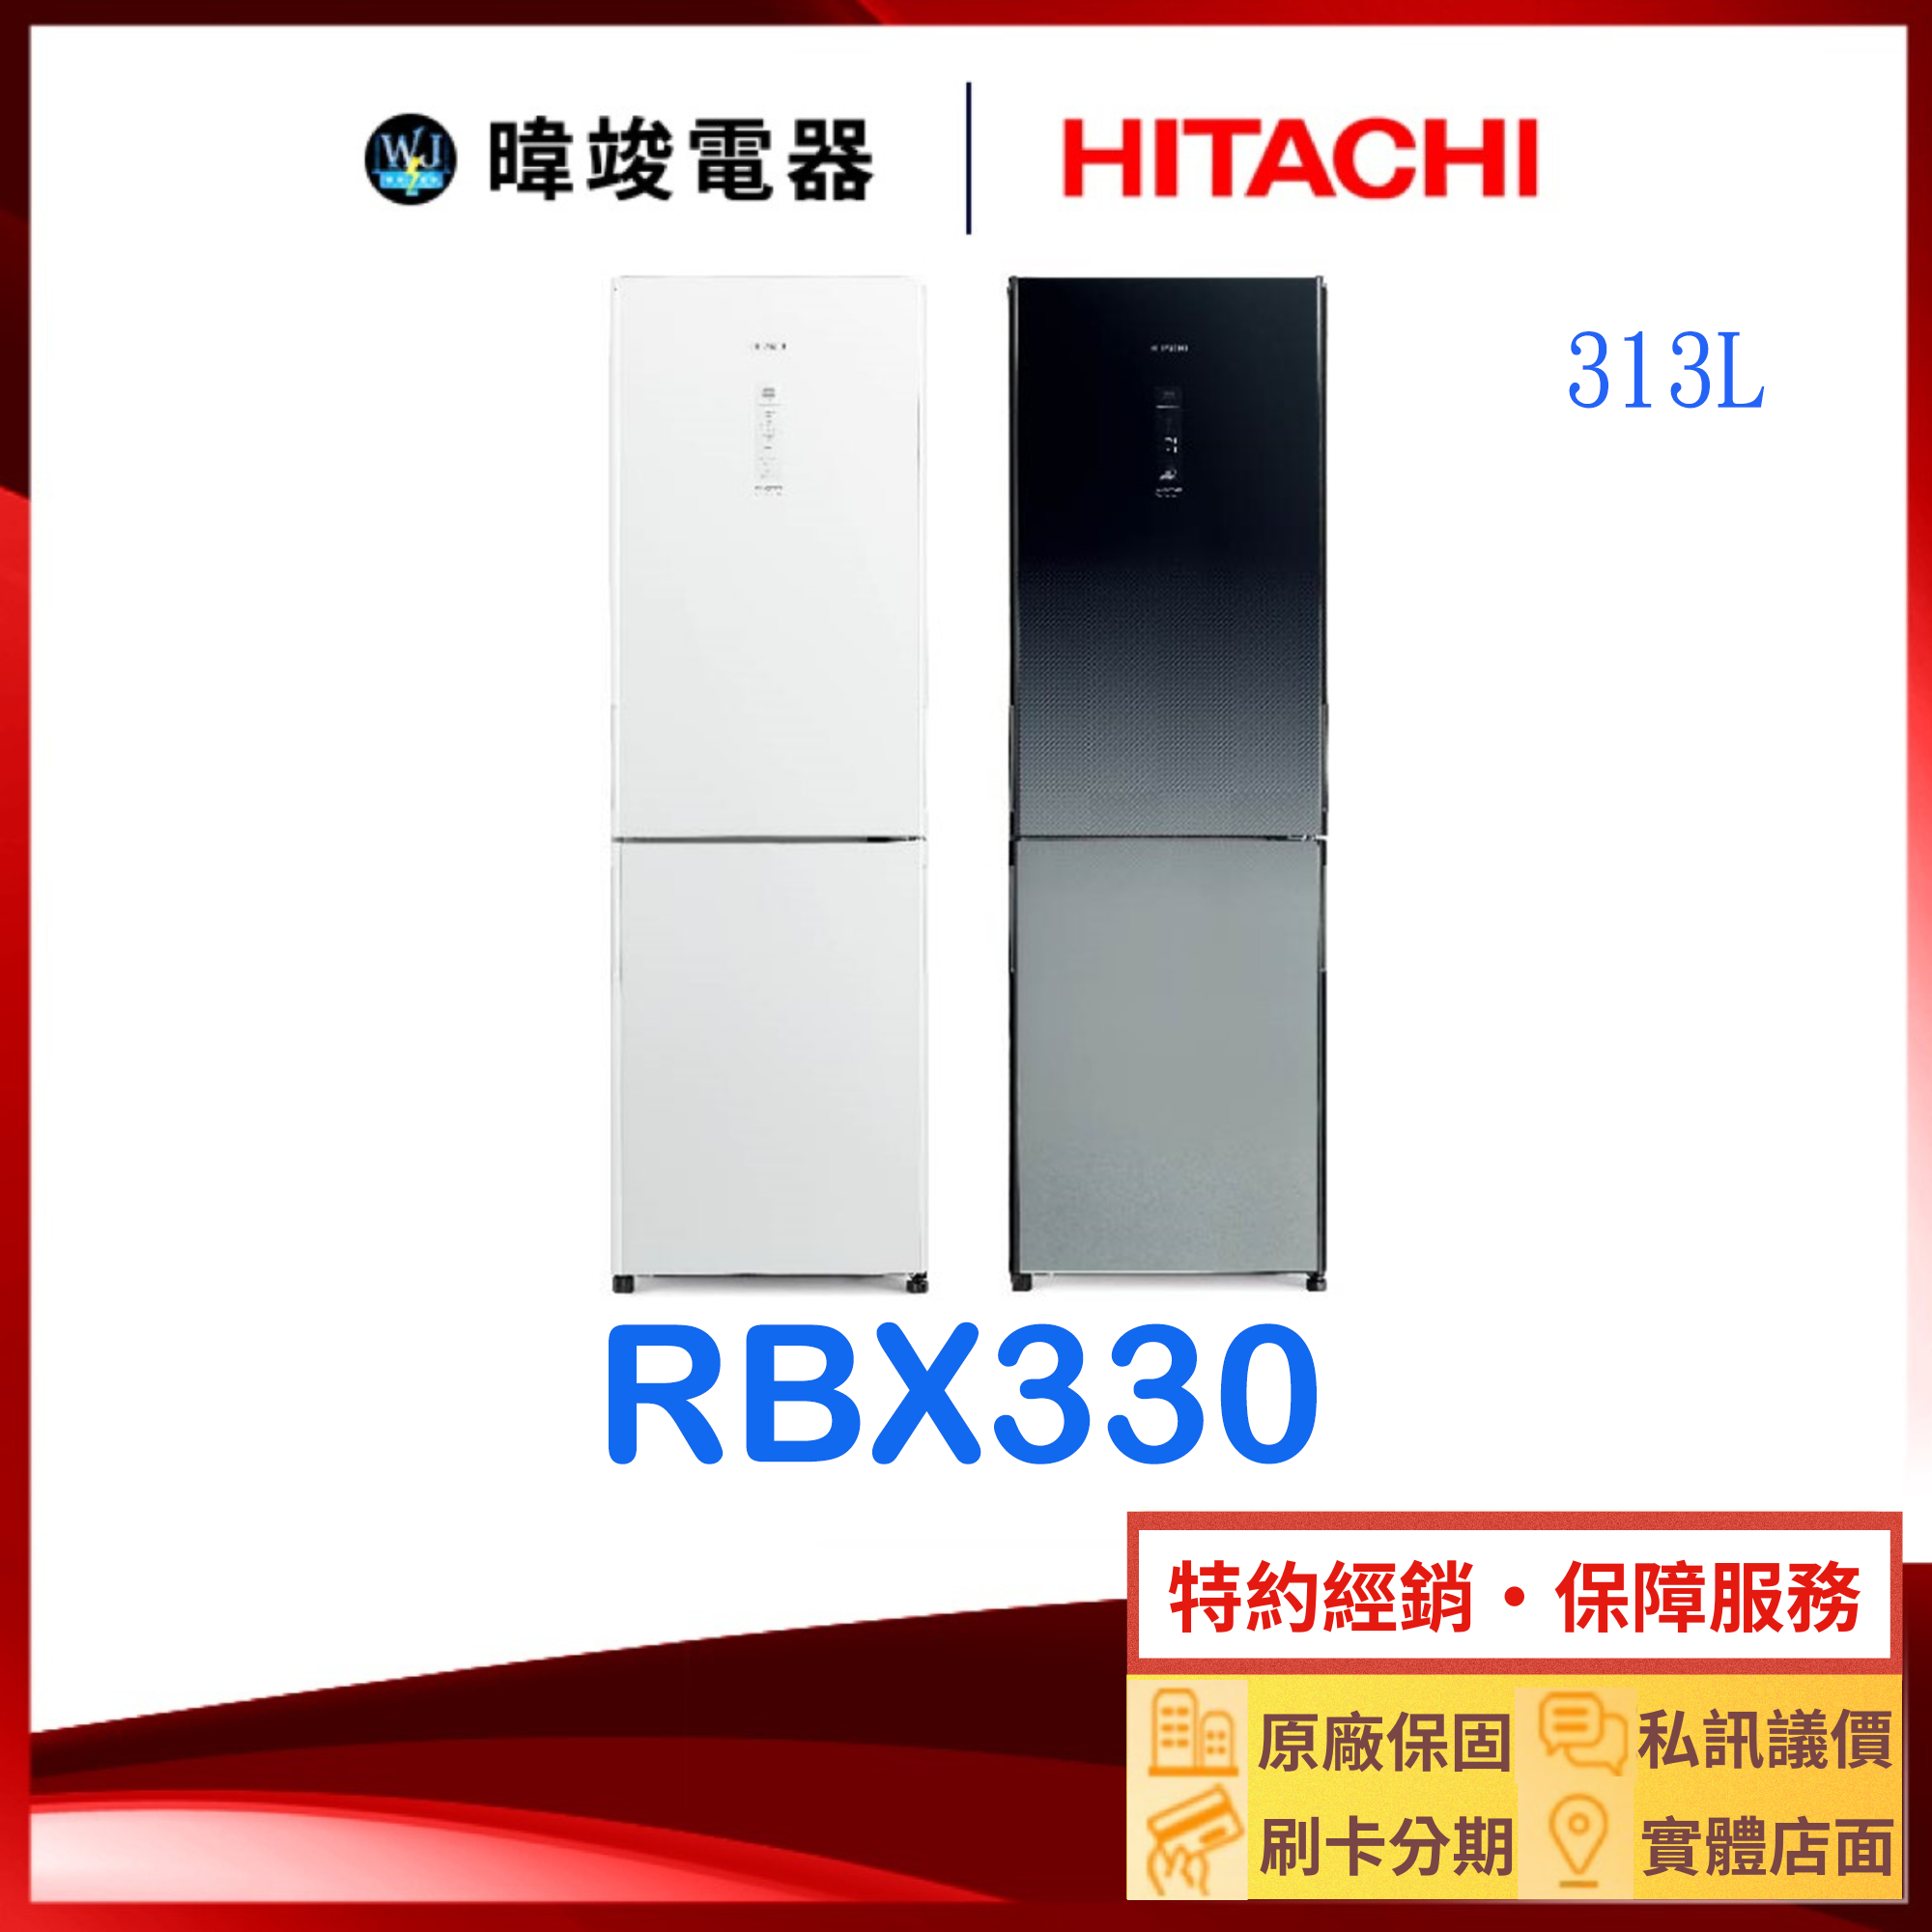 現貨【獨家折扣碼】HITACHI 日立冰箱 RBX330 雙門 小冰箱 1級能效 R-BX330 變頻 電冰箱